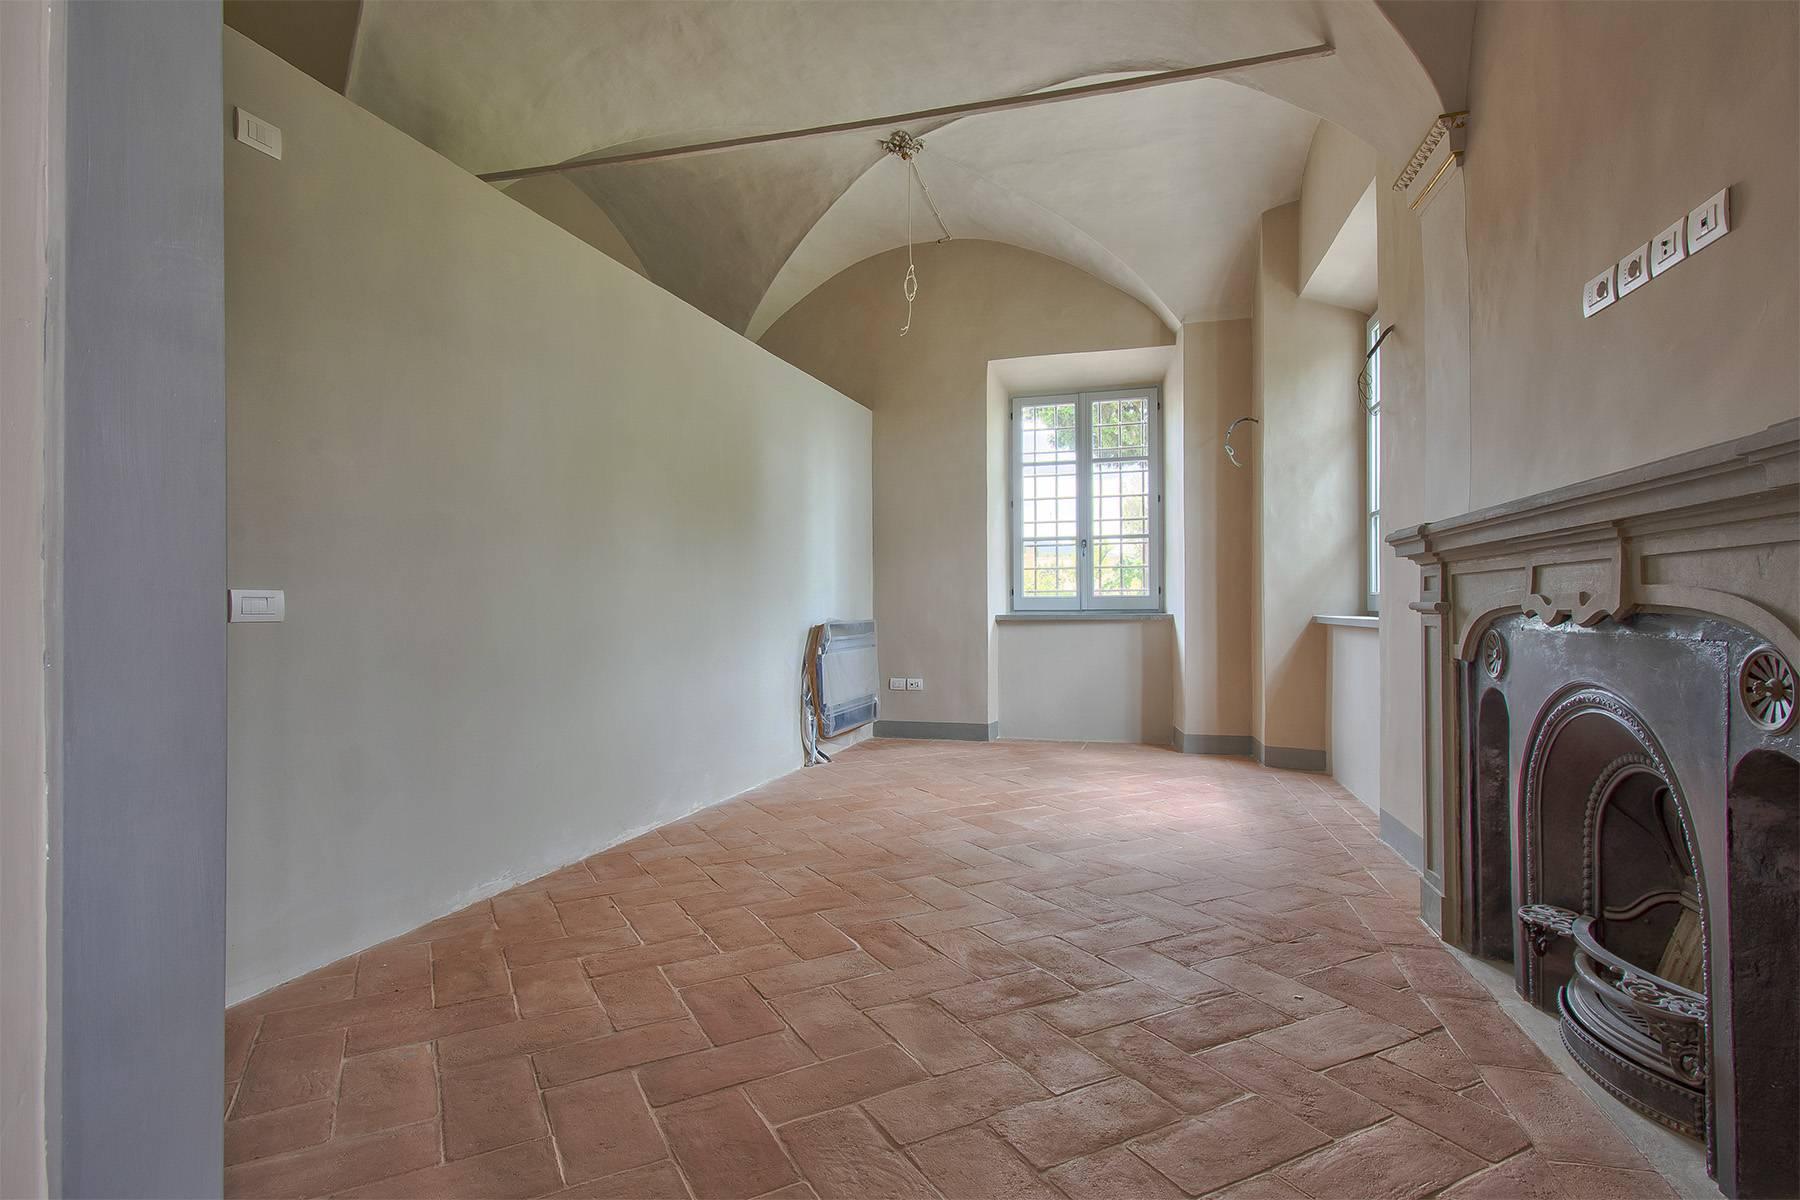 Prestigiosi appartamenti in splendida villa storica sulle colline fiorentine - 8